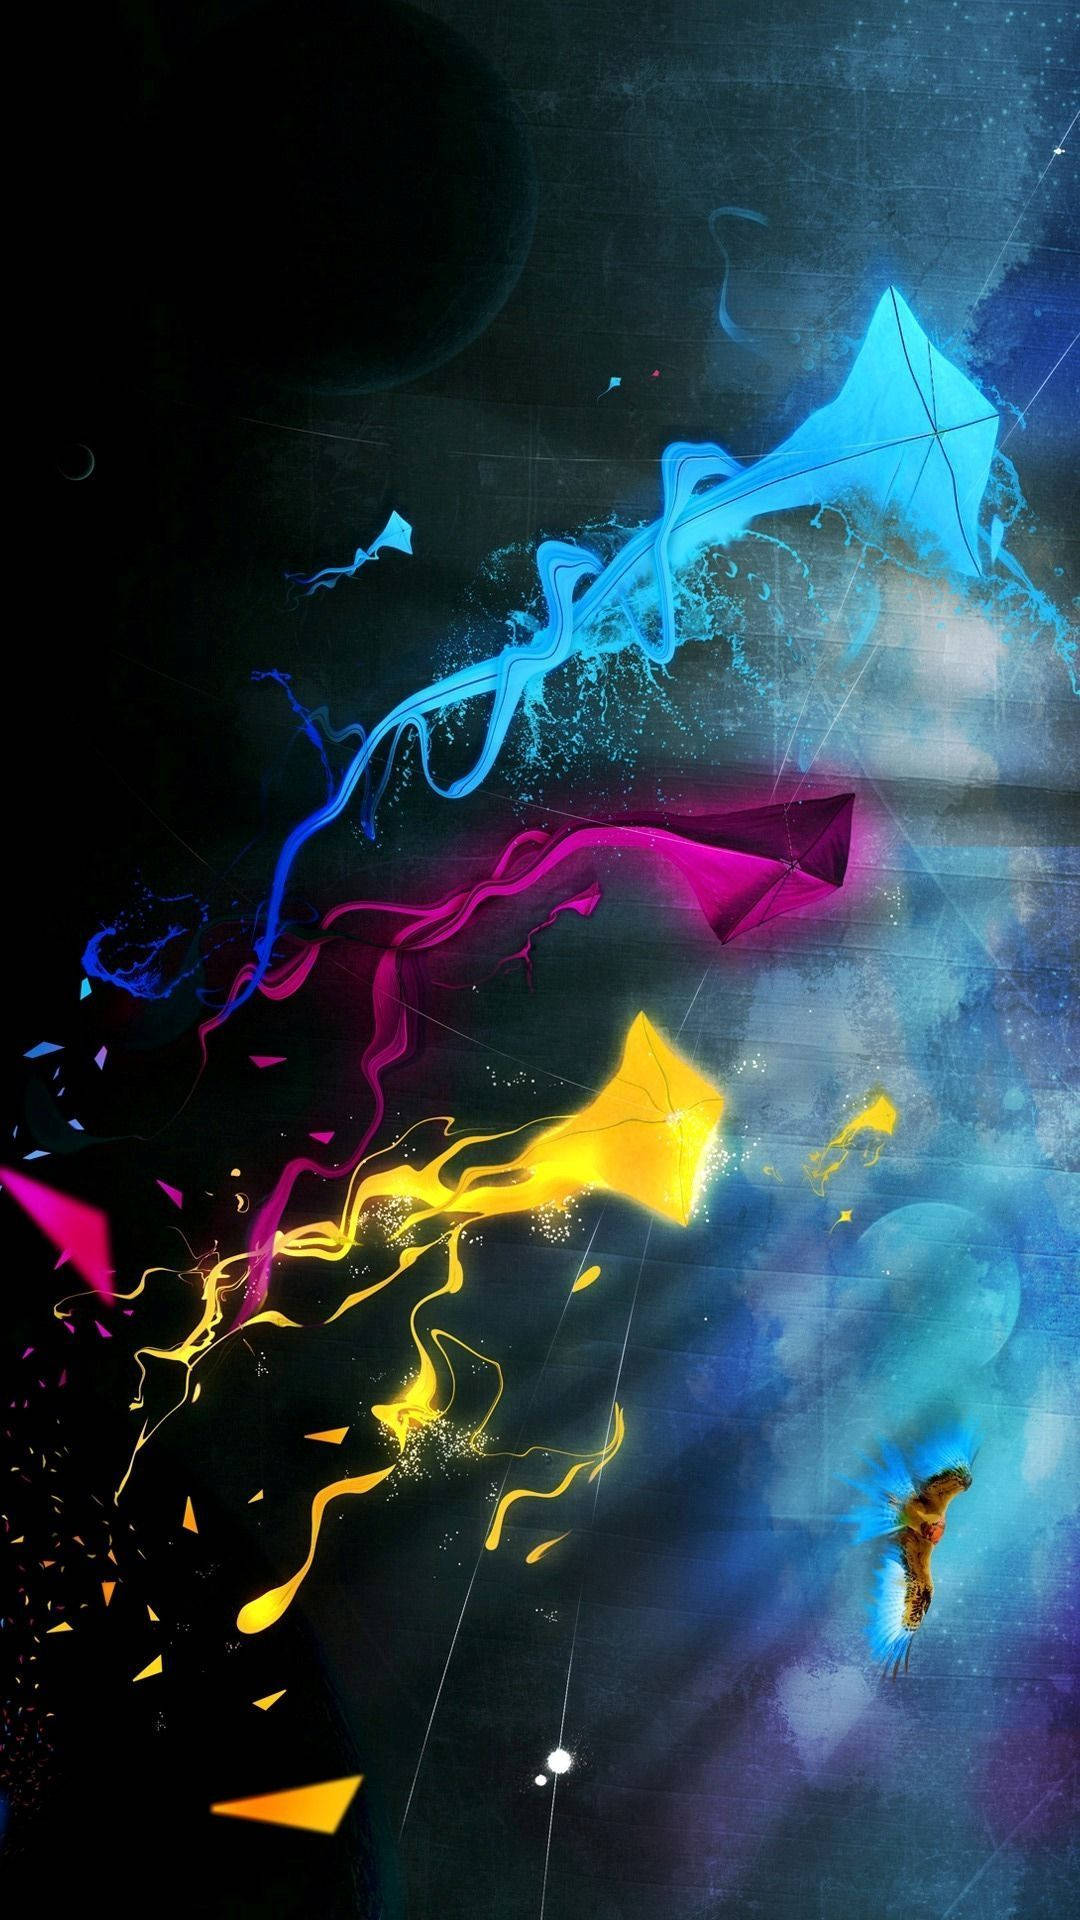 Splattered Kites Cell Phone Image Background